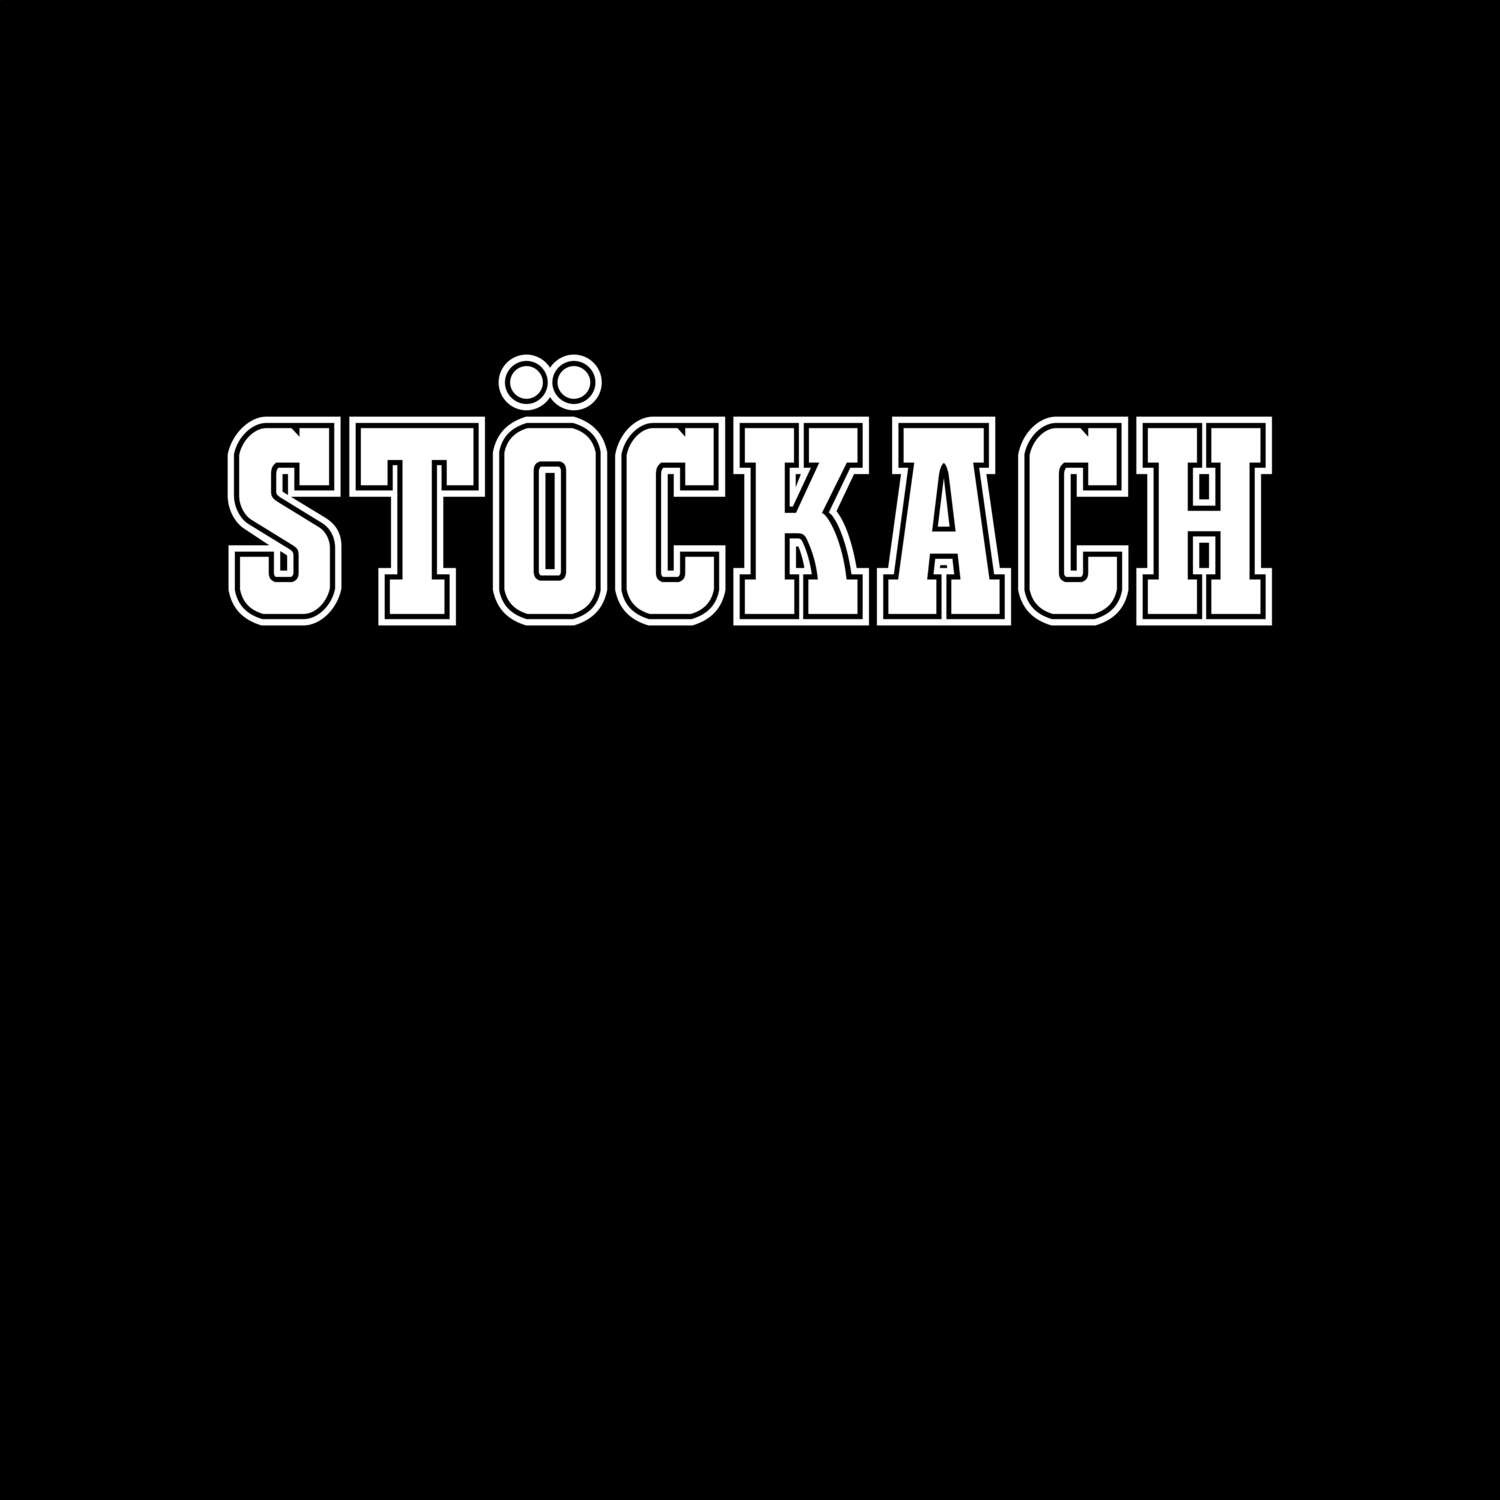 Stöckach T-Shirt »Classic«